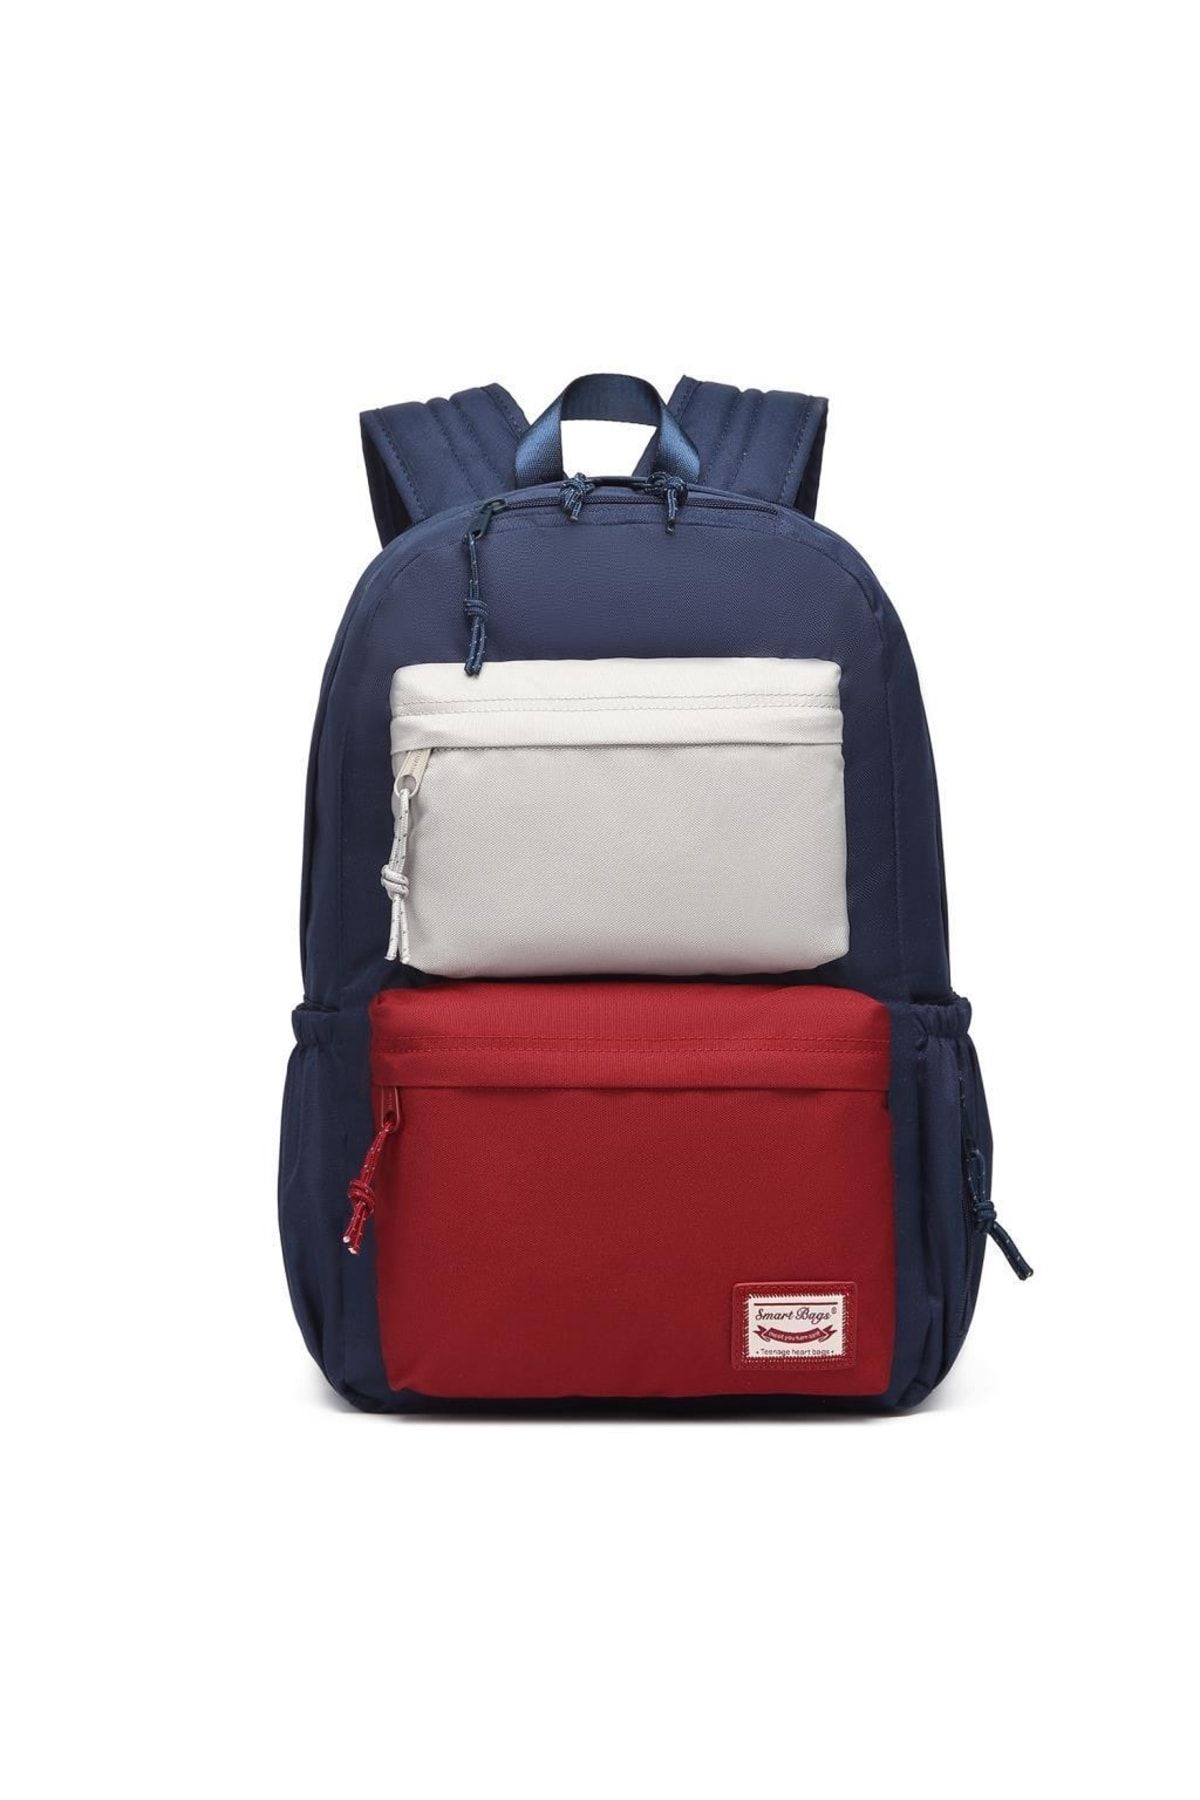 Smart Bags Sırt Çantası Okul Boyu Laptop Gözlü 3155